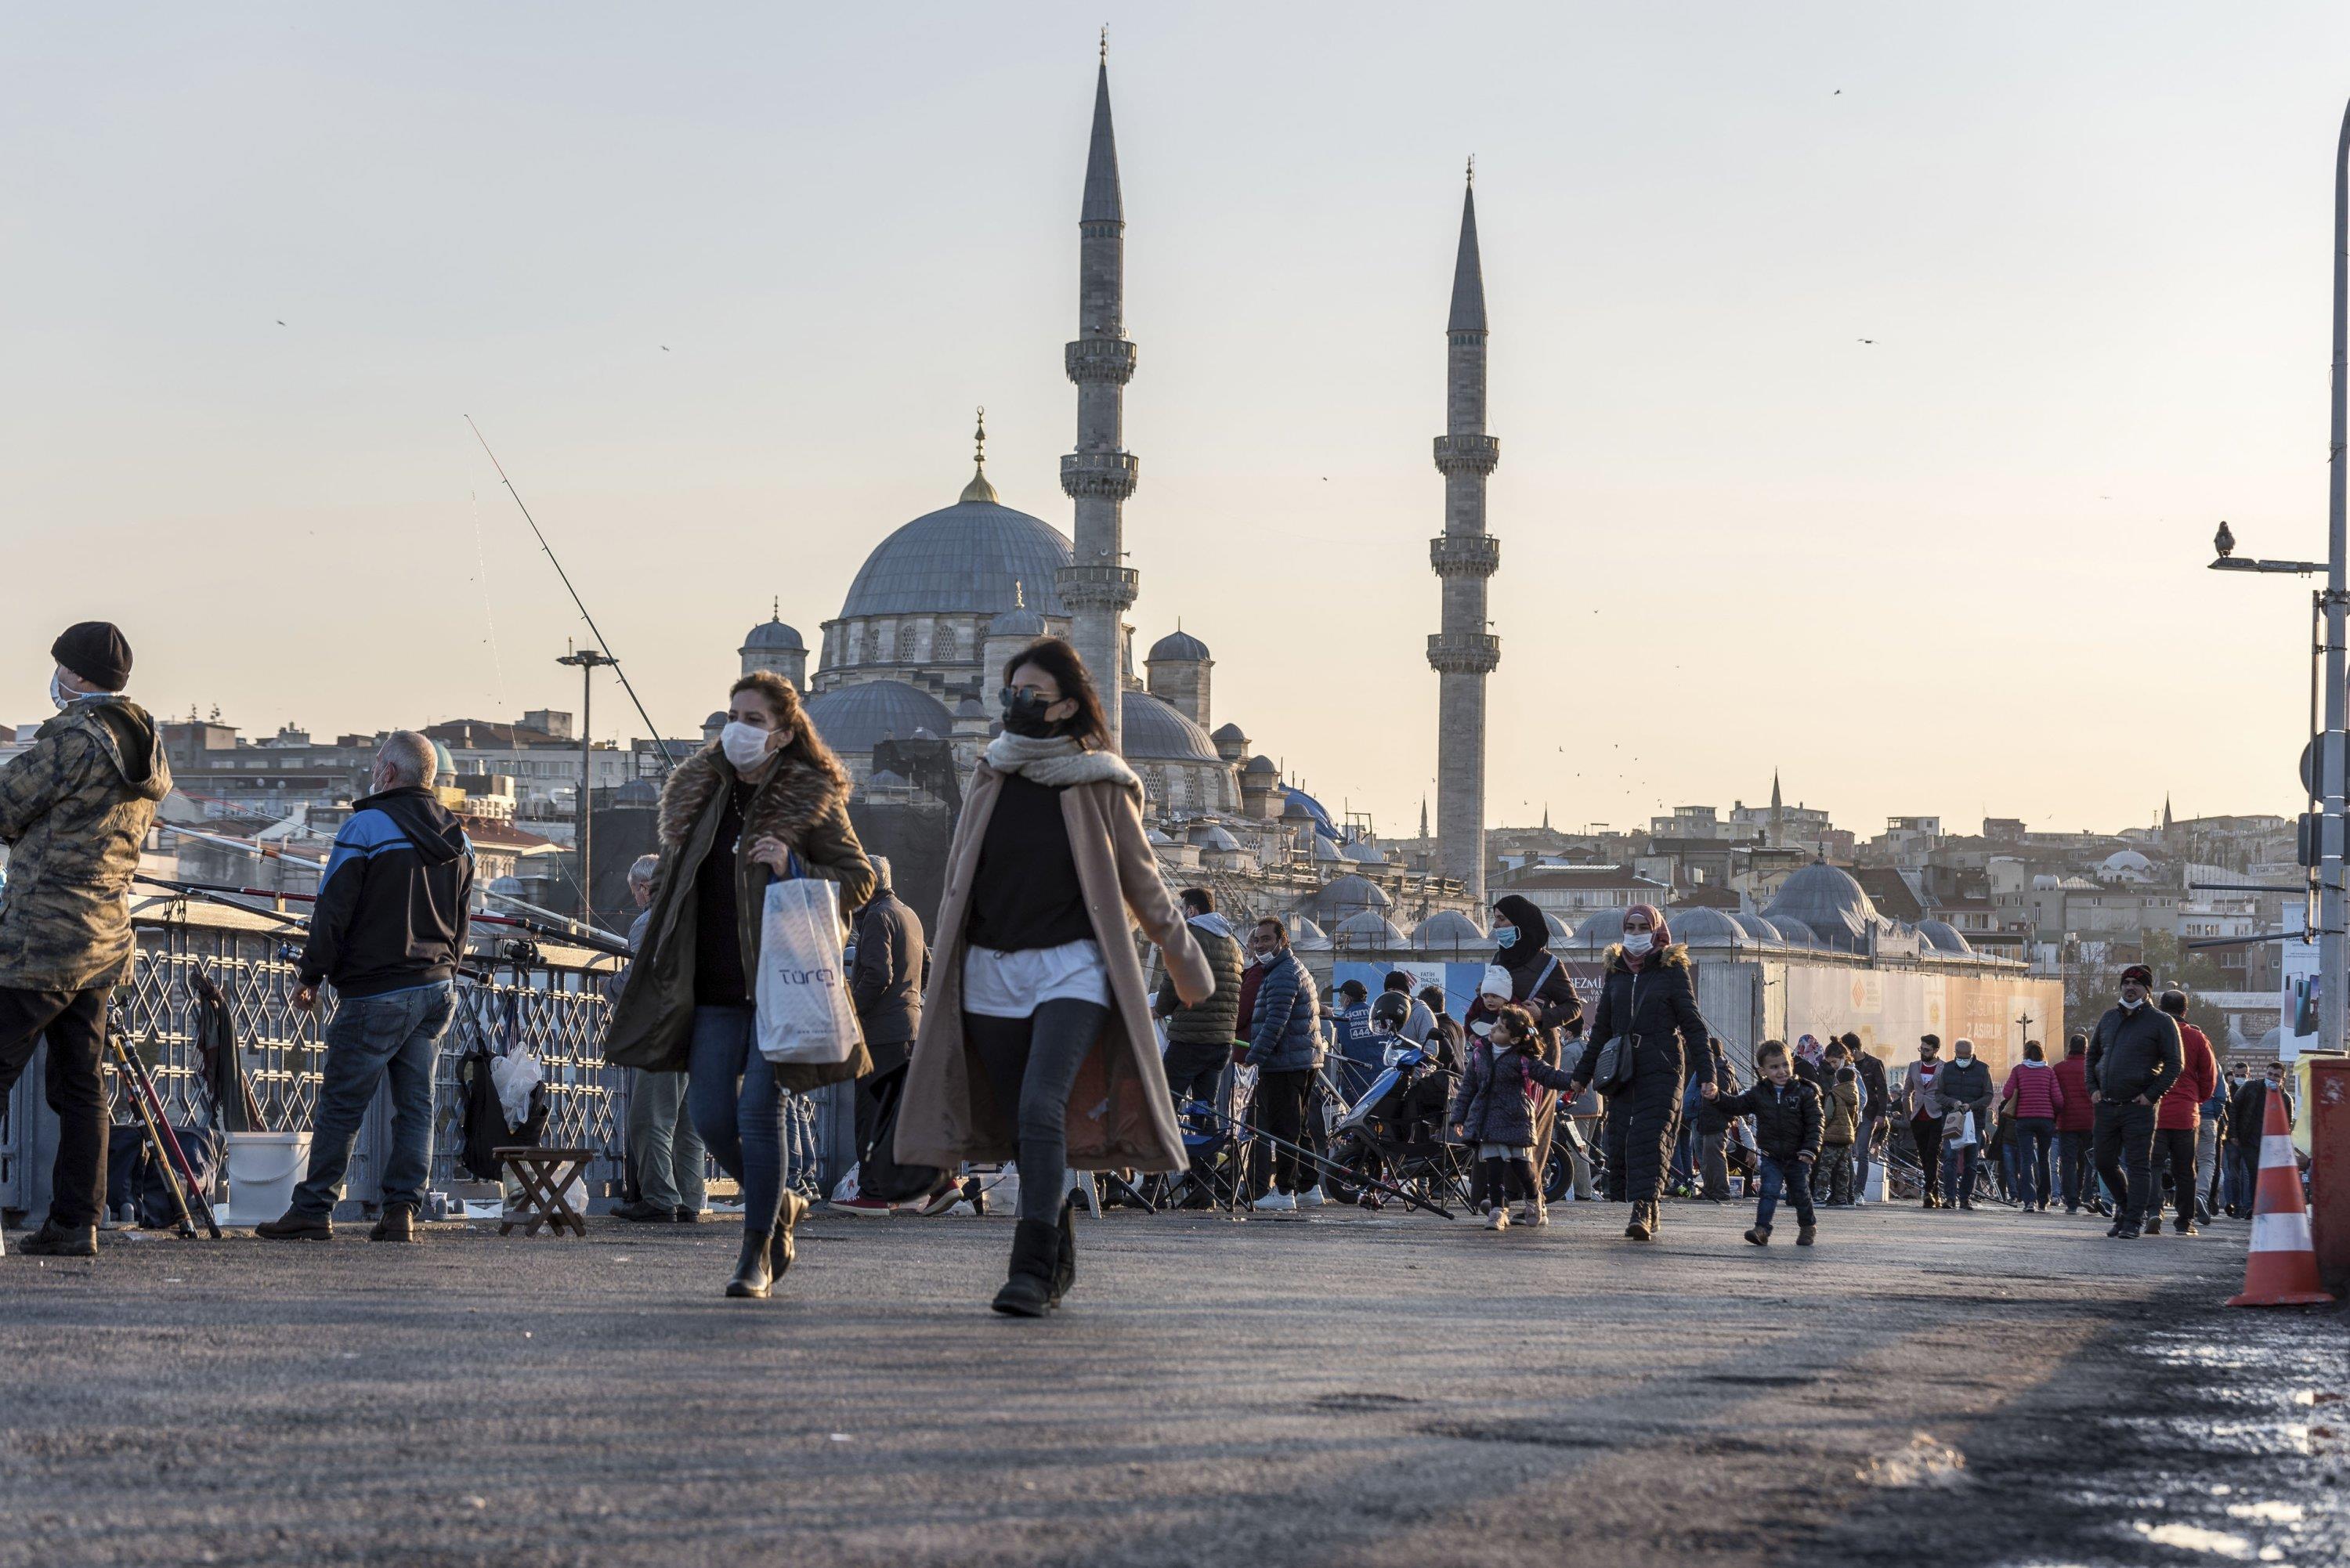 انخفاض كبير في نسبة التلوث بإسطنبول نتيجة الإغلاق الشامل لأزيد من أسبوعين